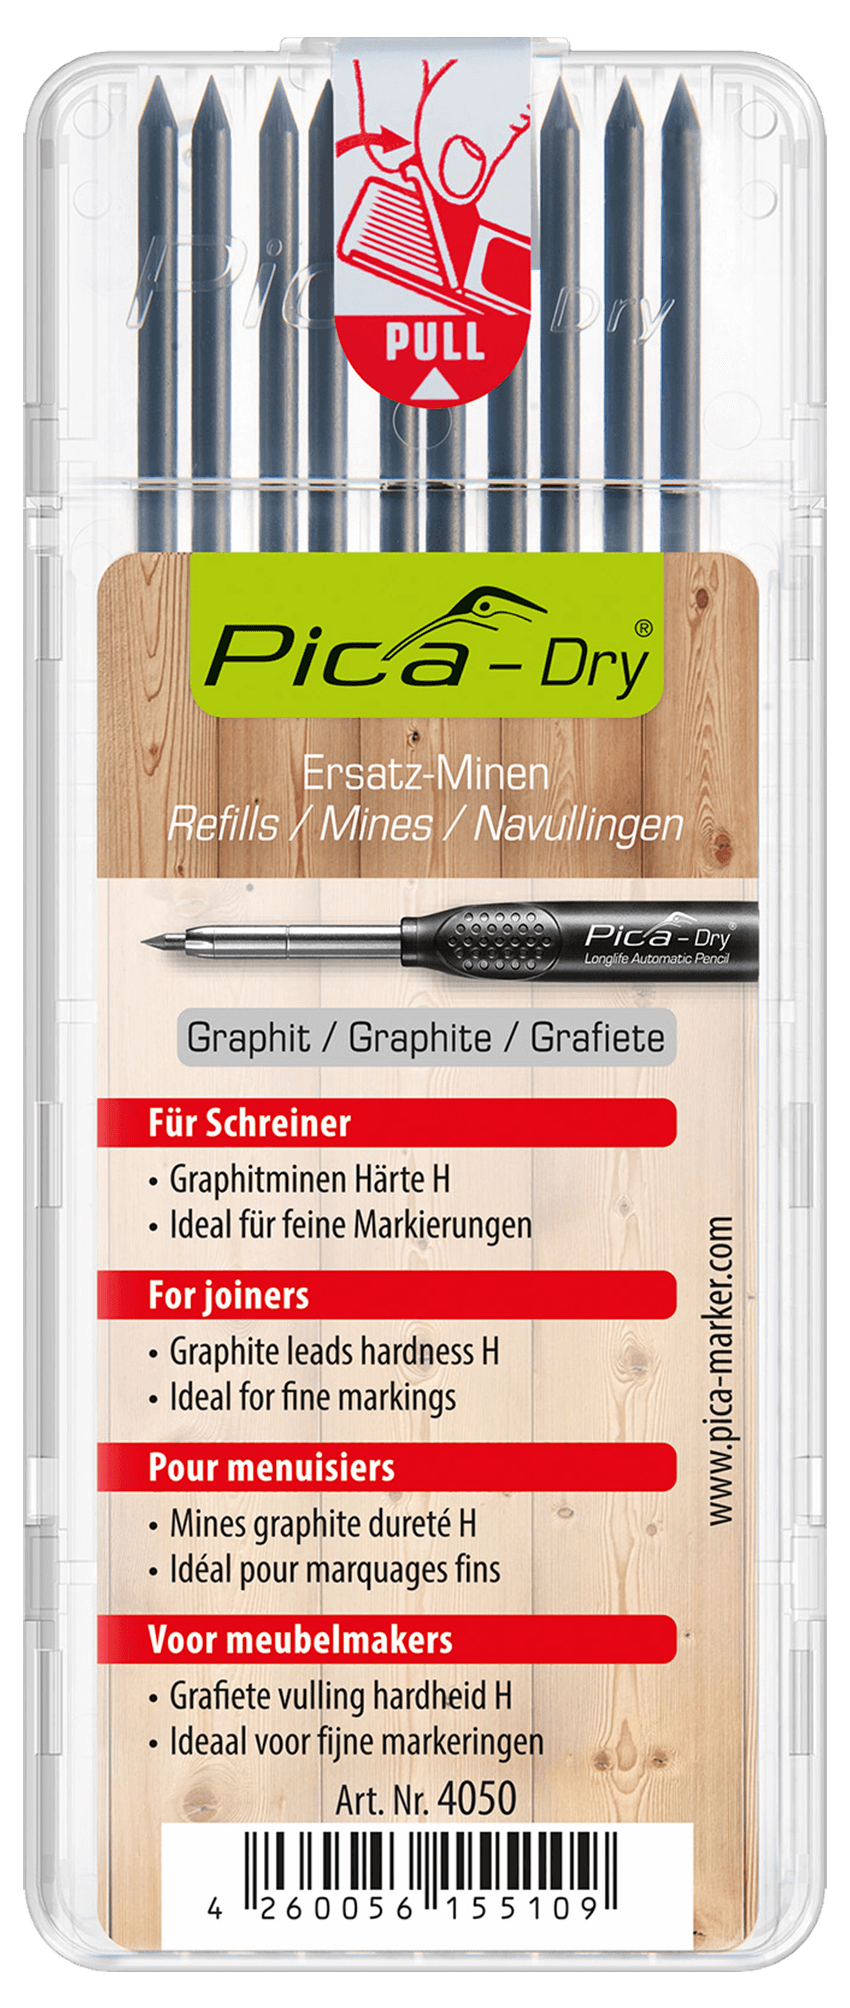 Pica Dry Schreiner-Minen 10 Stück, Härte H, Grafit, für präzise Markierungen, ideal auf Holz, Ersatzminen